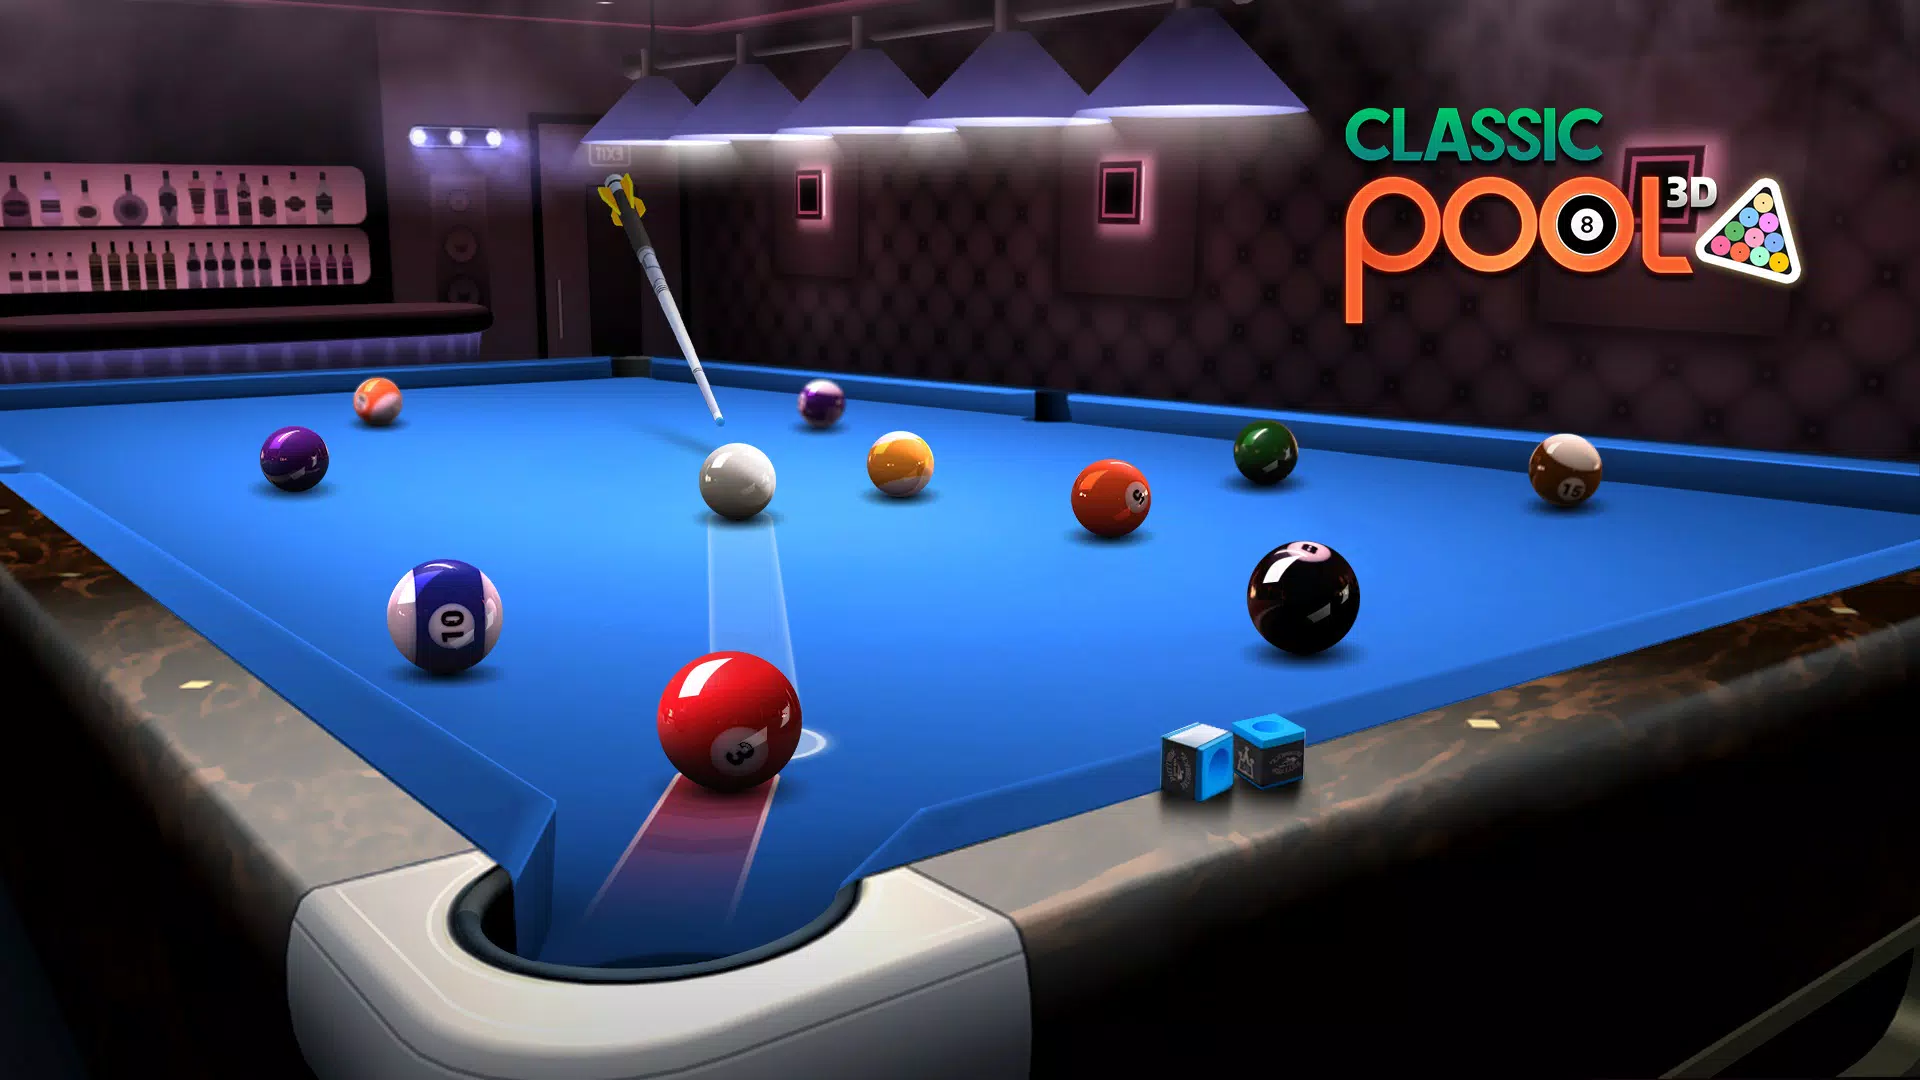 Classic Pool 3D: 8 Ball v1.2.3 MOD APK (Unlock All Cues